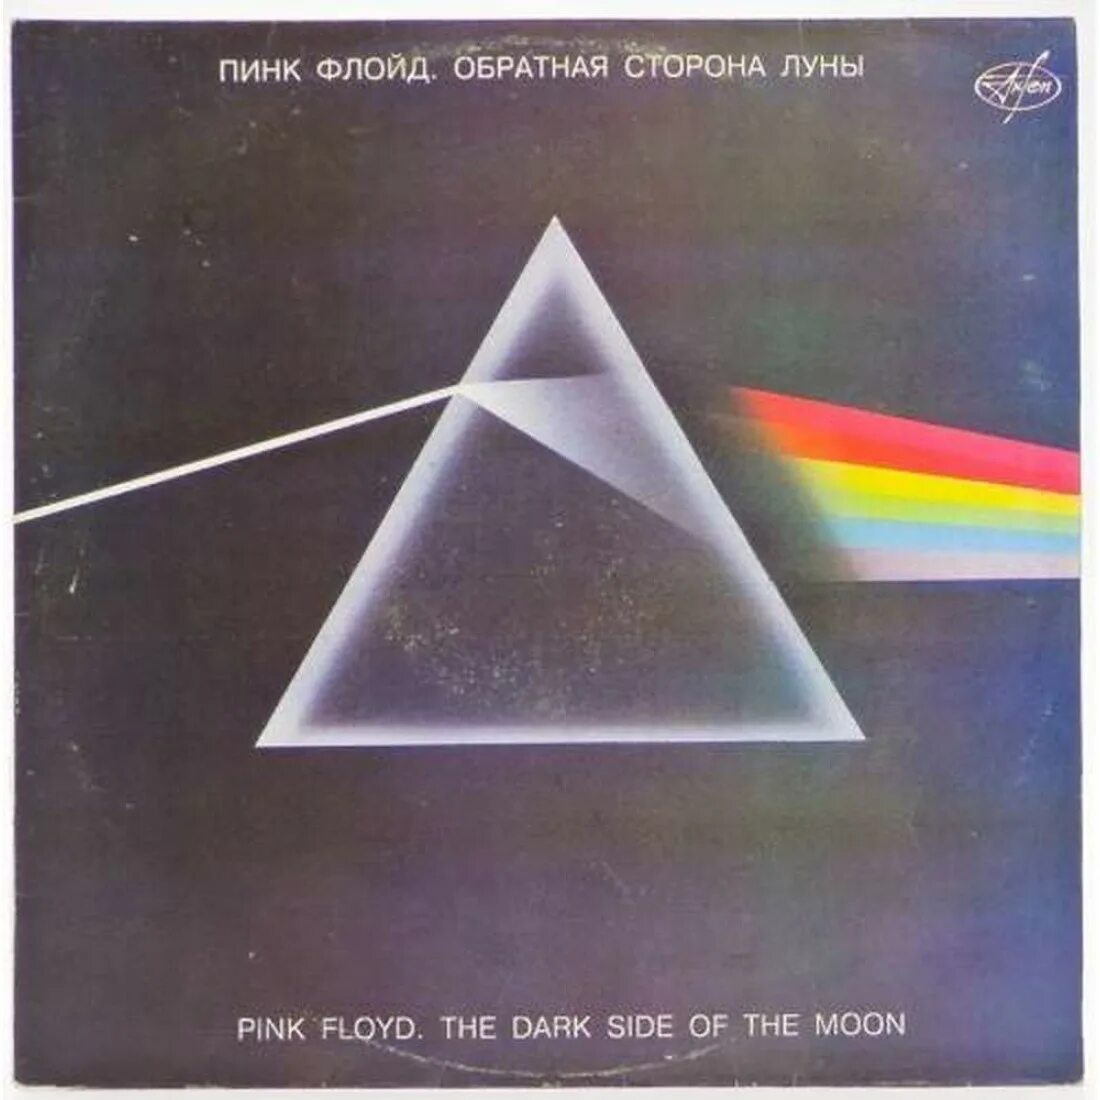 Пинк флойд слушать обратная сторона луны альбом. Пластинка Пинк Флойд. Виниловая пластинка Пинк Флойд. Пинк Флойд Обратная сторона Луны пластинка. Виниловая пластинка Pink Floyd the Dark Side of the Moon.